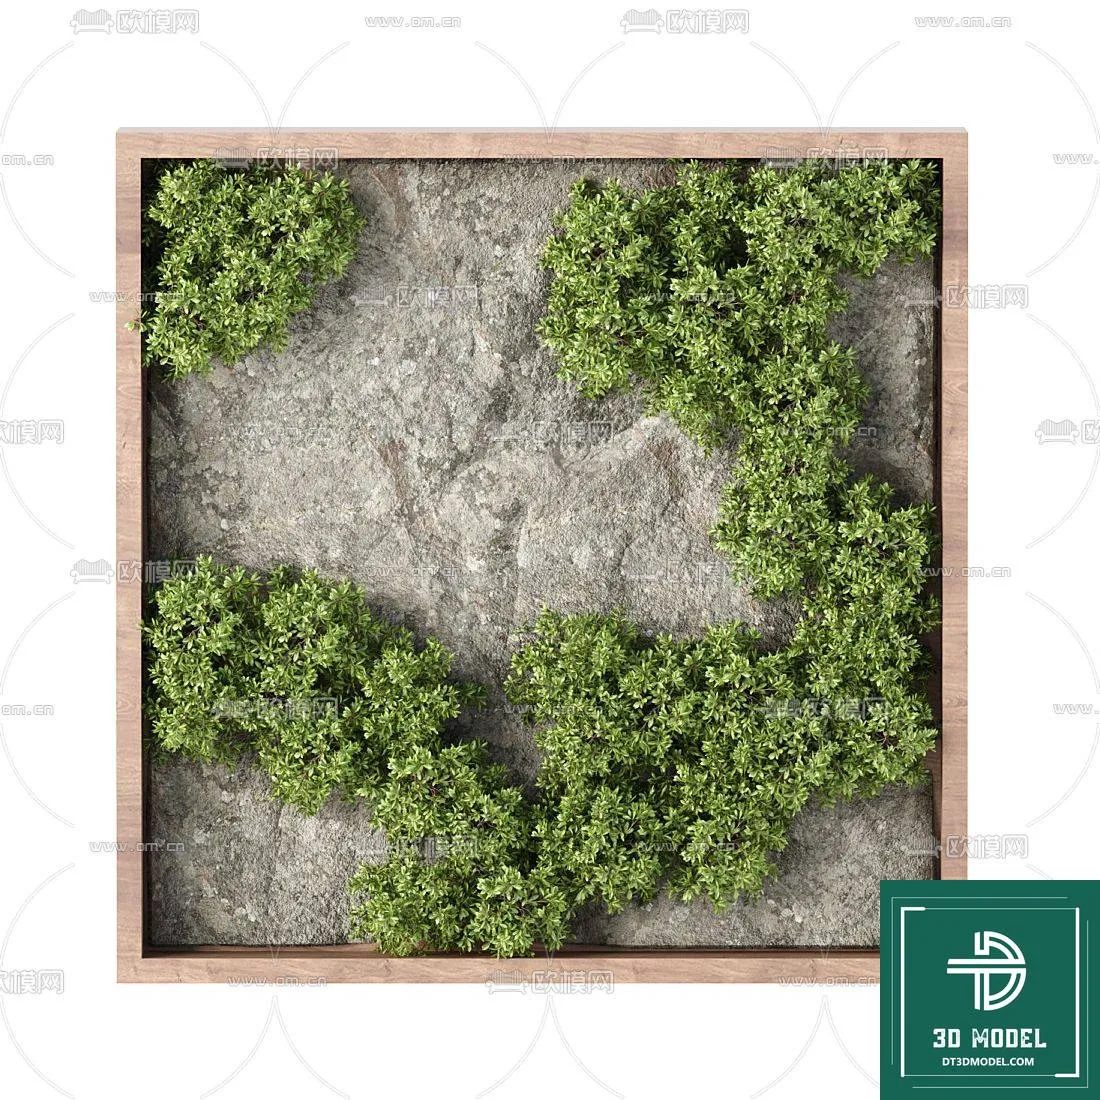 VERTICAL GARDEN – FITOWALL PLANT 3D MODEL – 157